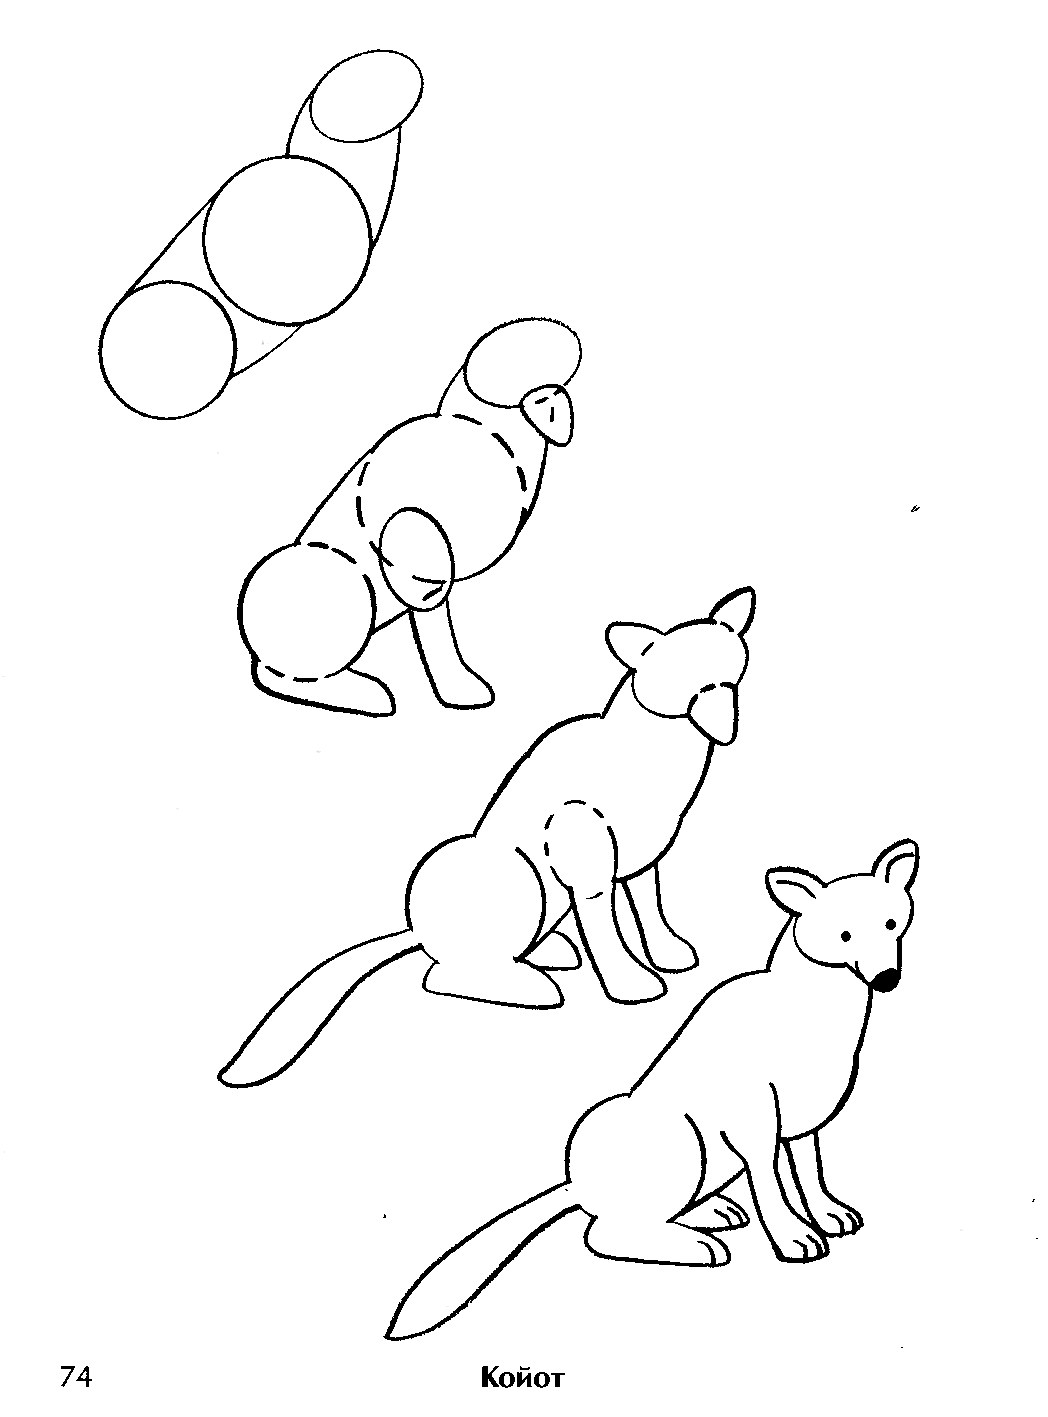 Схема рисования лисы